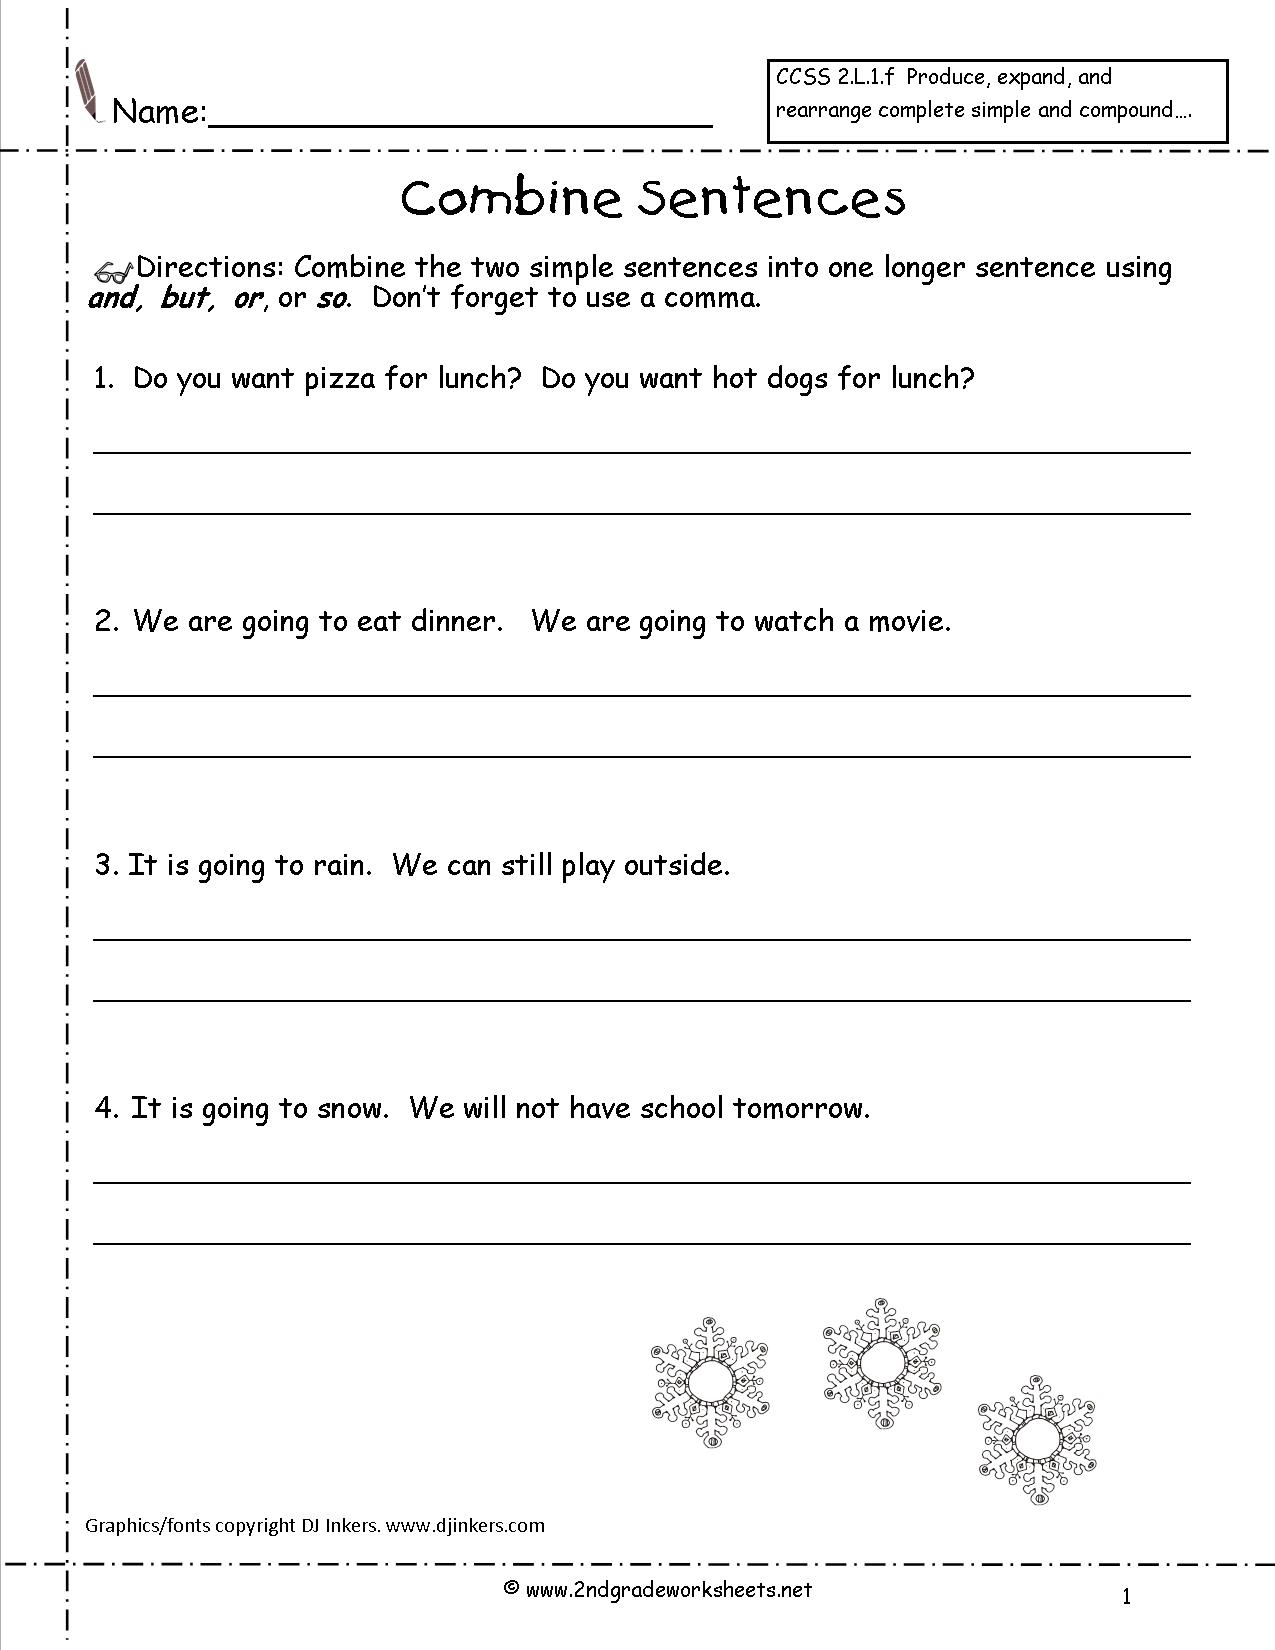 handwriting-practice-sentences-simple-sentences-worksheet-simple-and